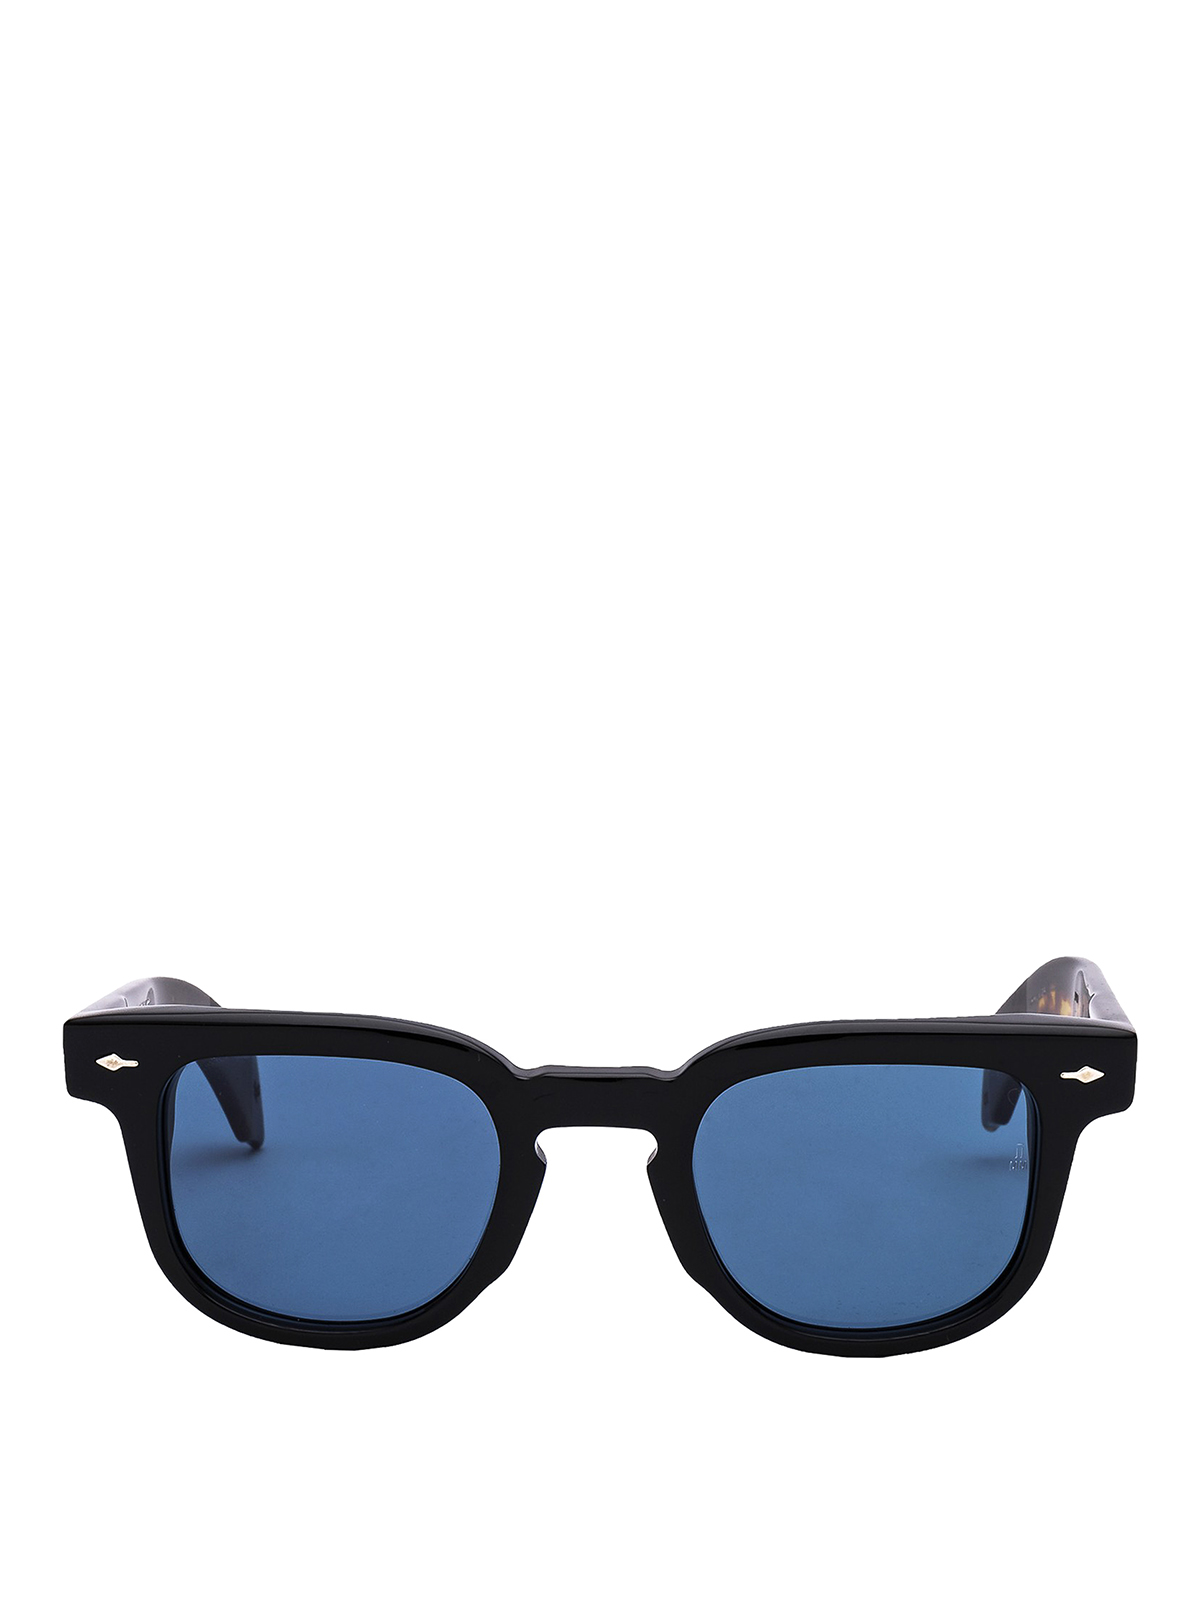 Shop JAX tortoise vintage sunglasses for men | Giant Vintage Sunglasses